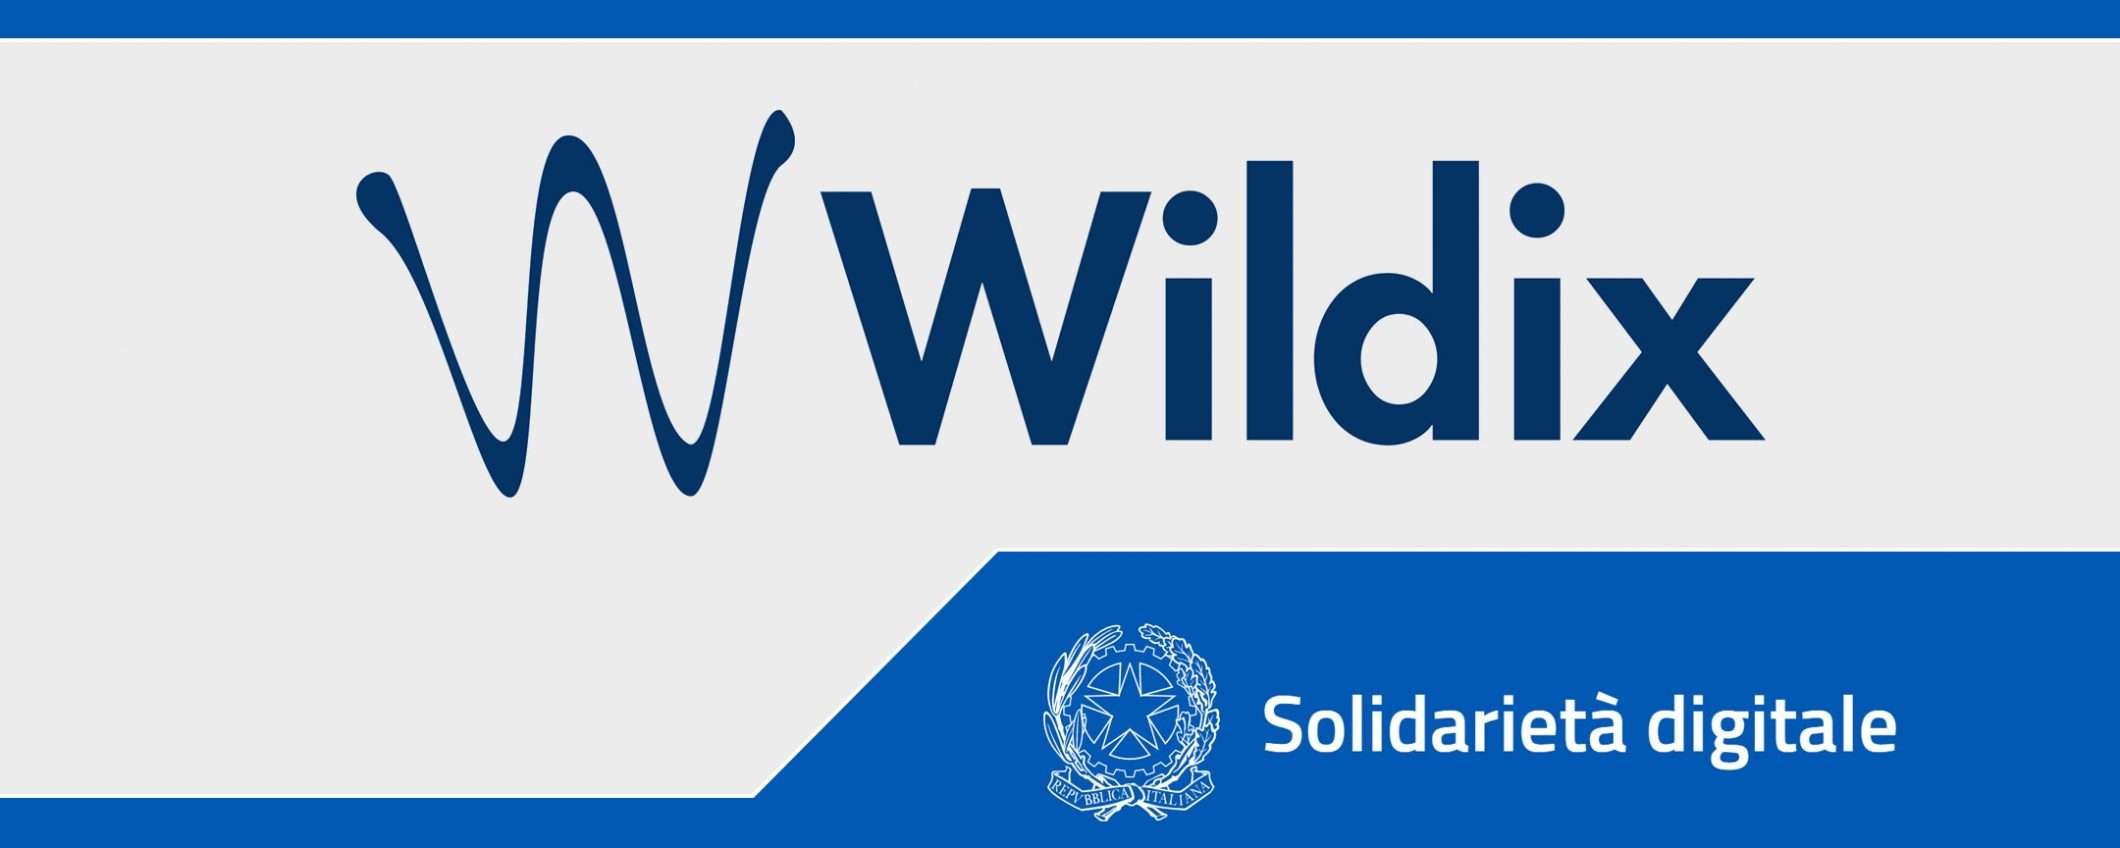 Solidarietà Digitale: Wildix, comunicazione cloud